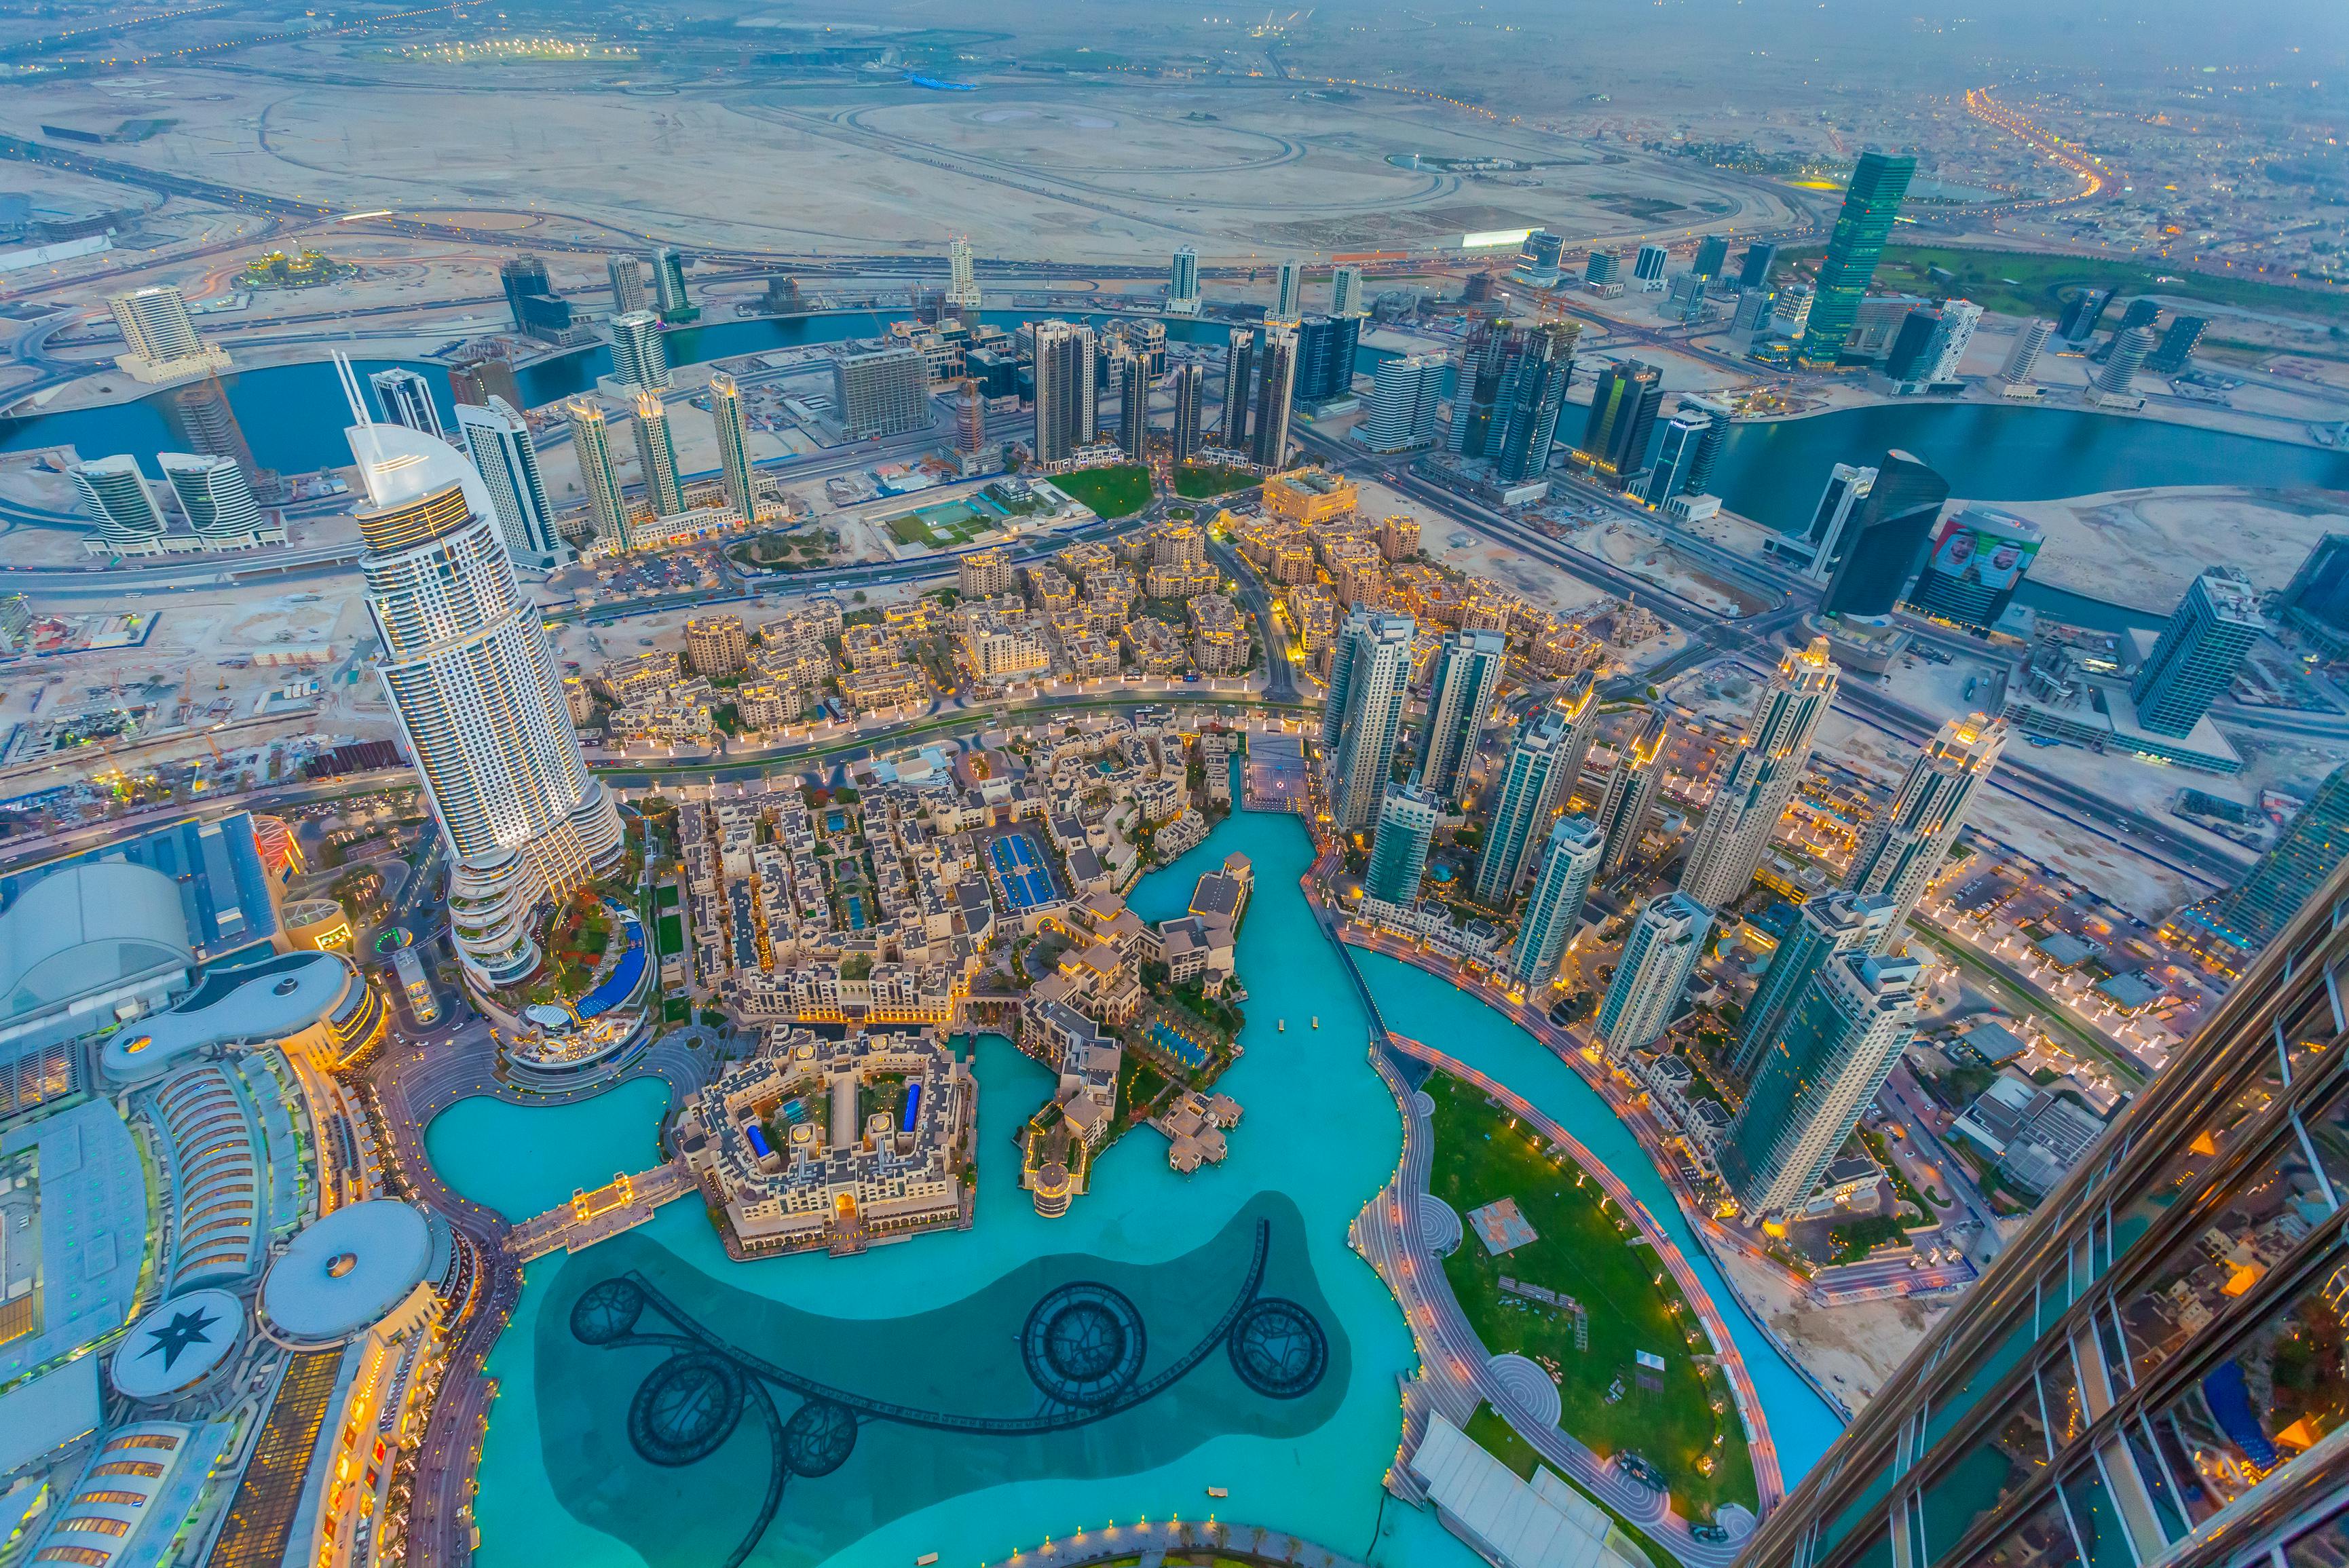 Traditionelle Stadtrundfahrt durch Dubai mit Abholung von Ras Al Khaimah